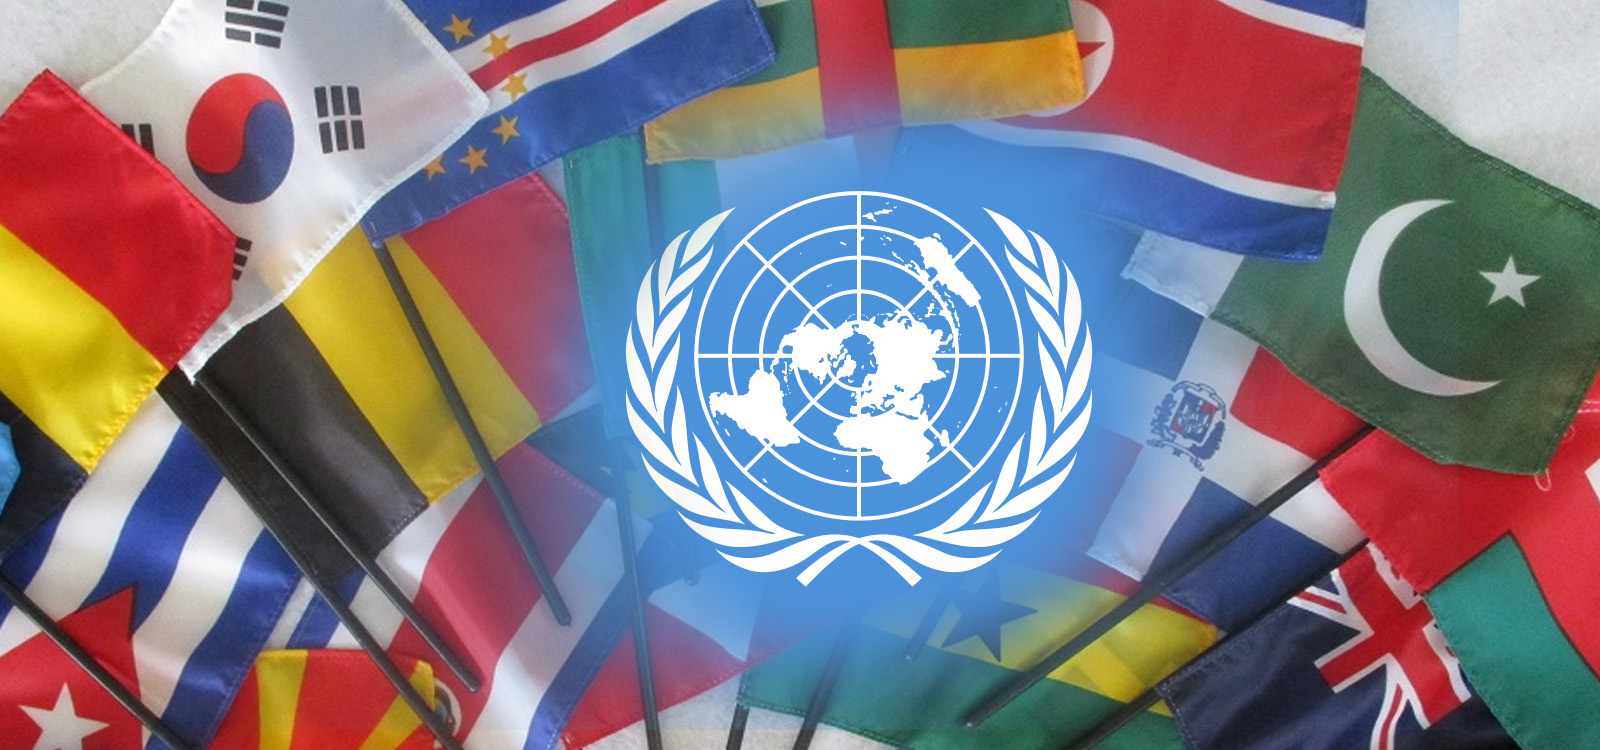 Членами оон является государств. Международные организации ООН. Флаги государств входящих в ООН. 193 Государства в ООН.